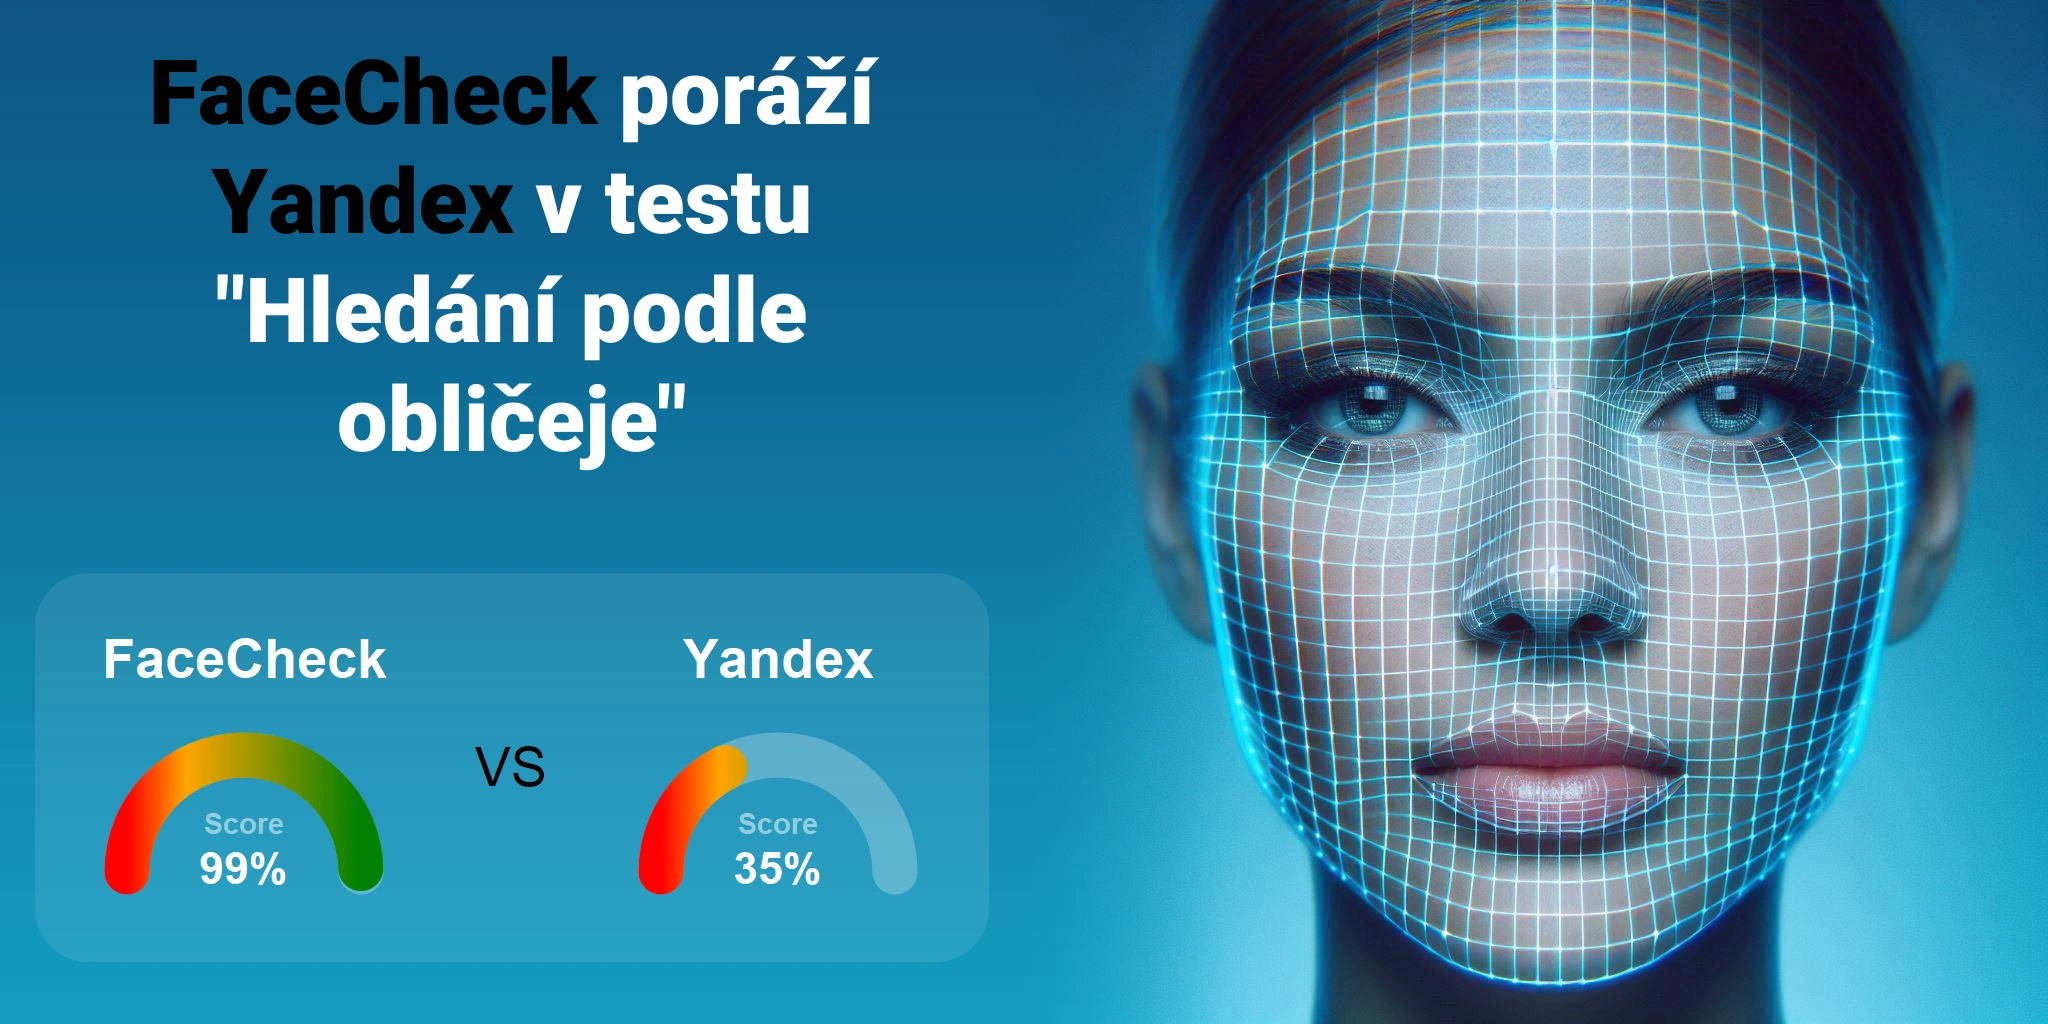 Který je lepší pro vyhledávání obličejů: <br>FaceCheck nebo Yandex?